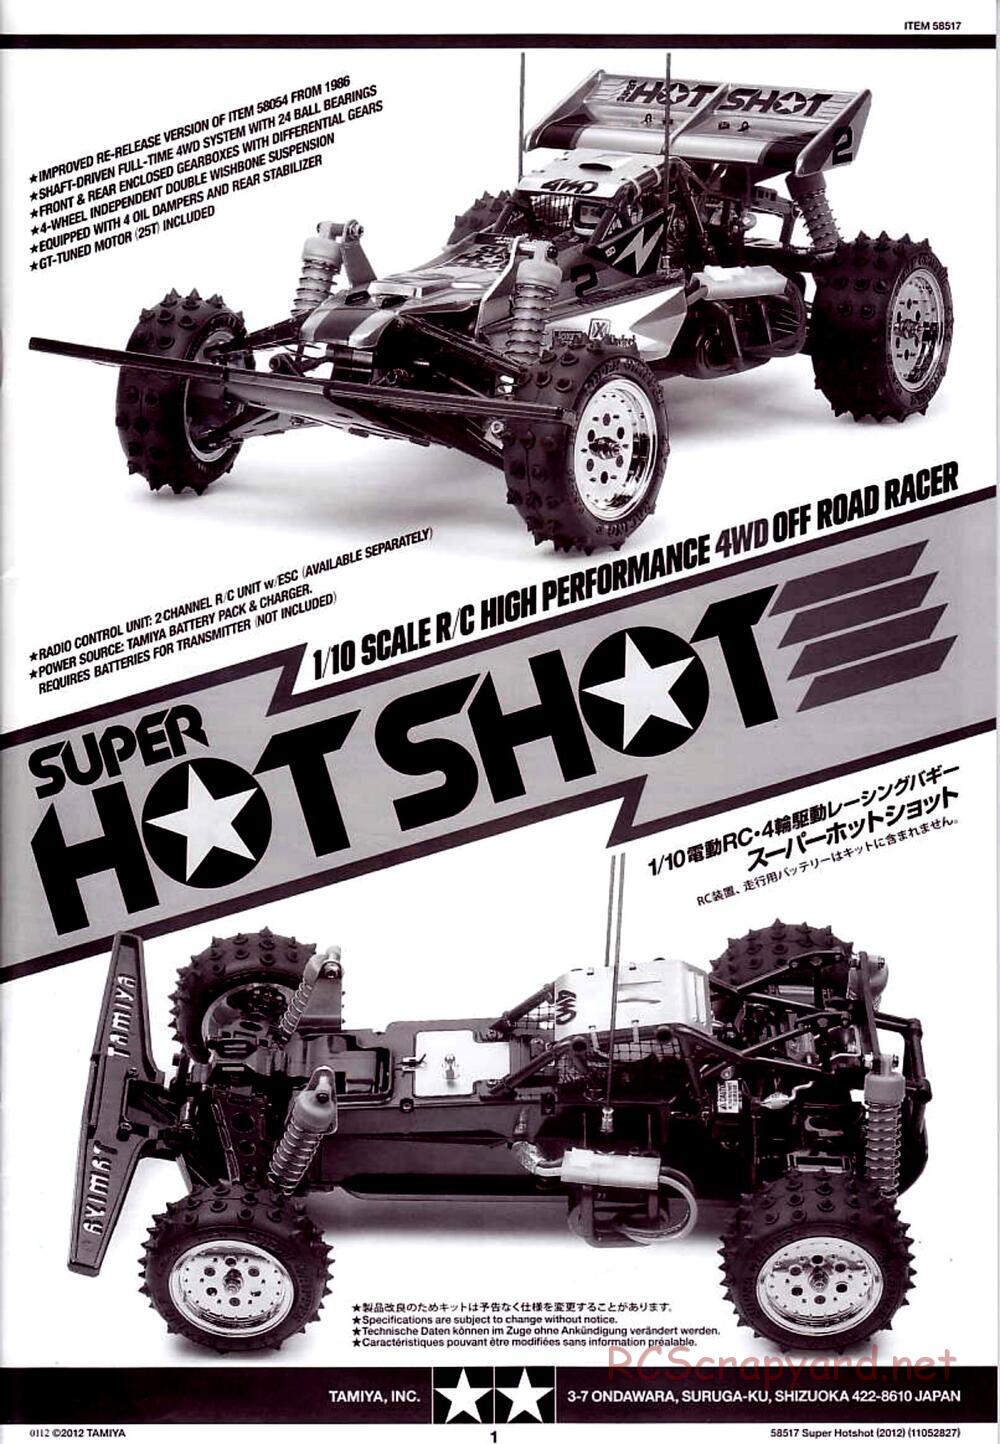 Tamiya - Super Hotshot 2012 - HS Chassis - Manual - Page 1